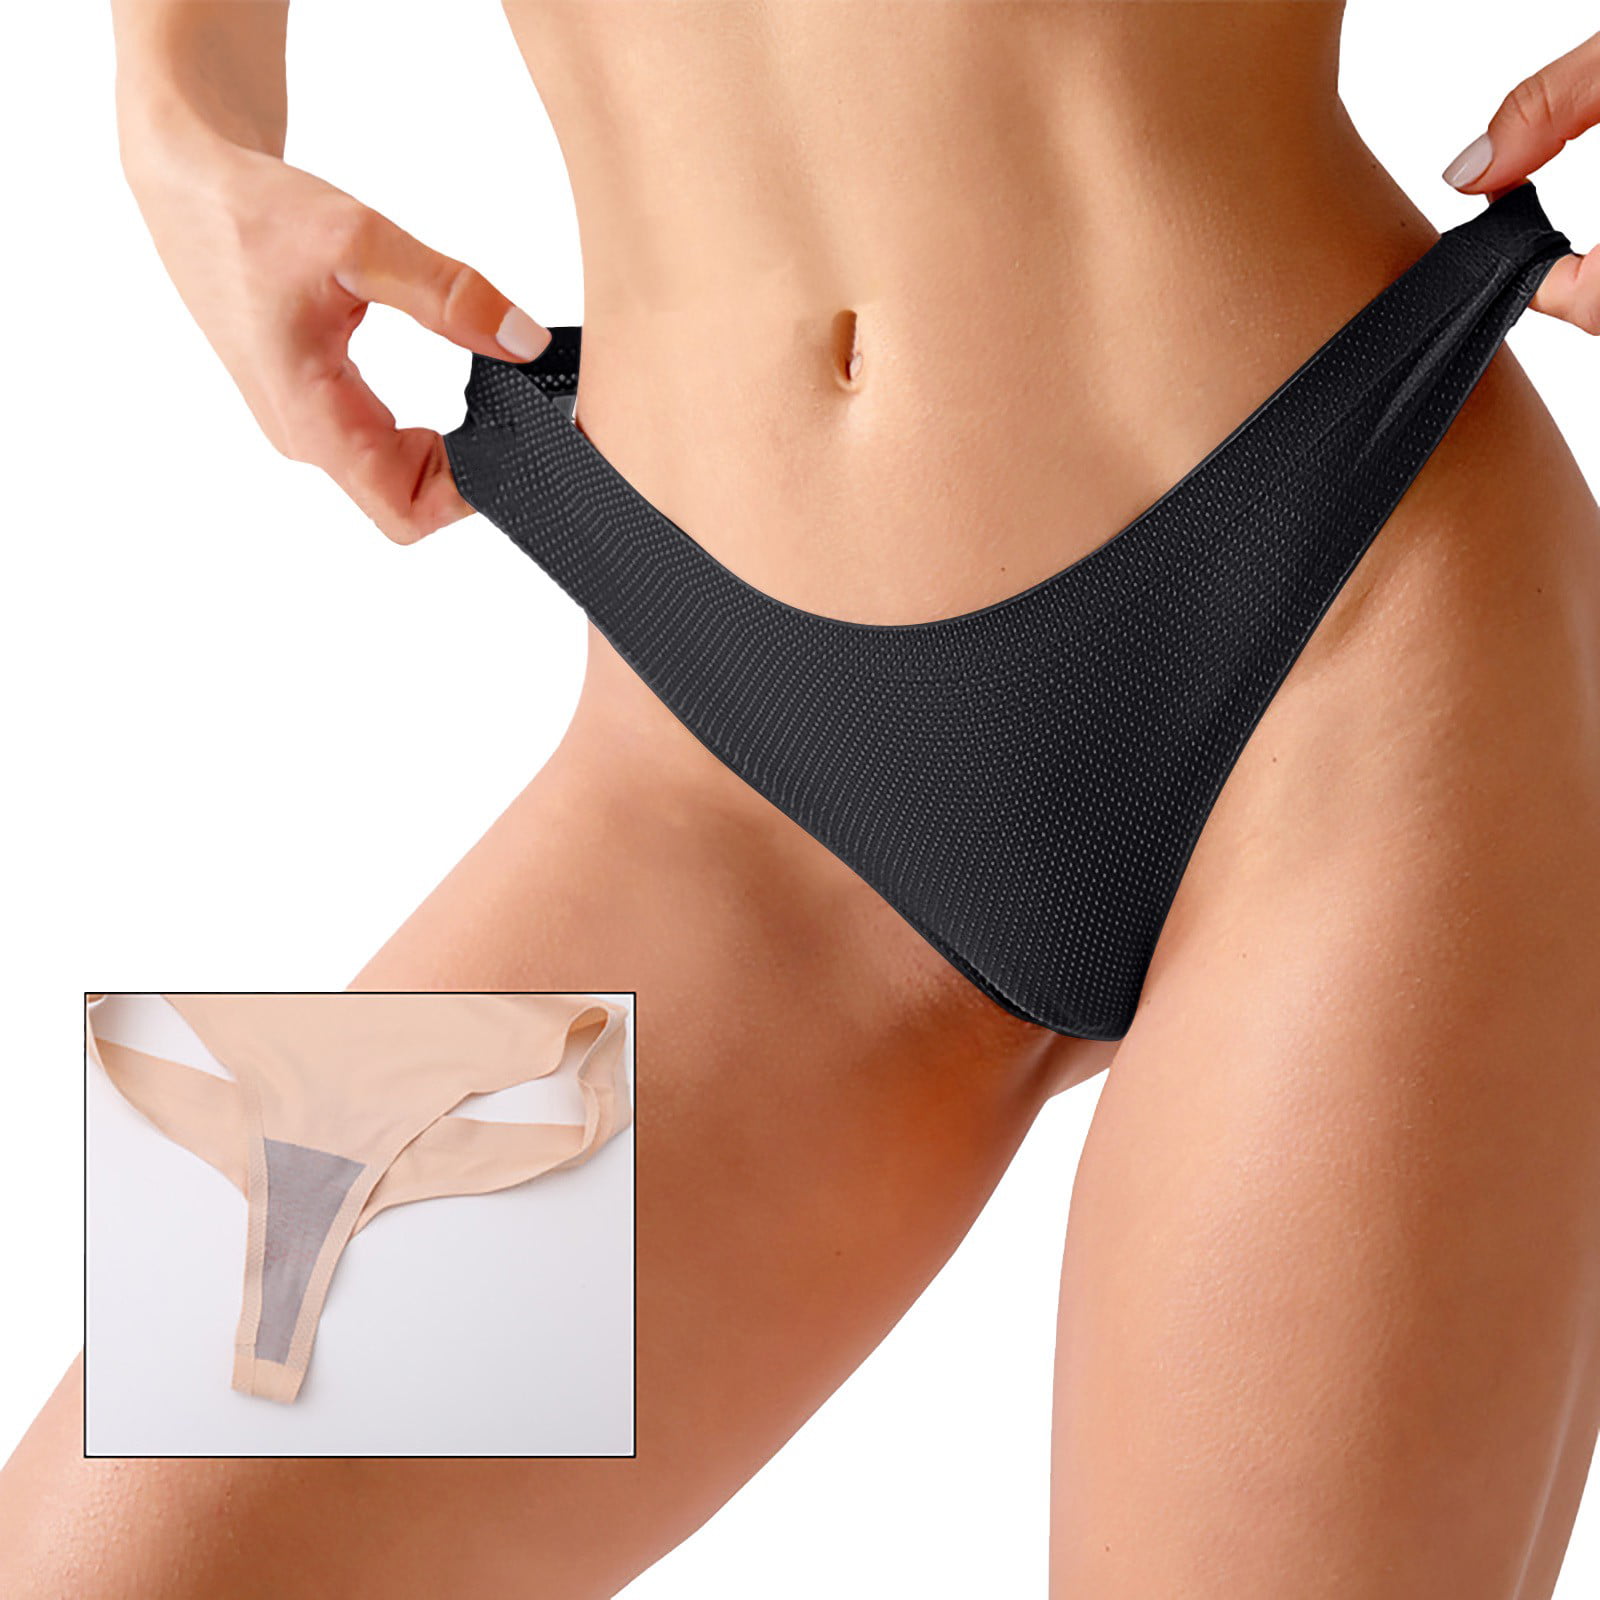 Joyspun Women's Ribbed Modal Thong Panties, 3-Pack, Sizes XS to